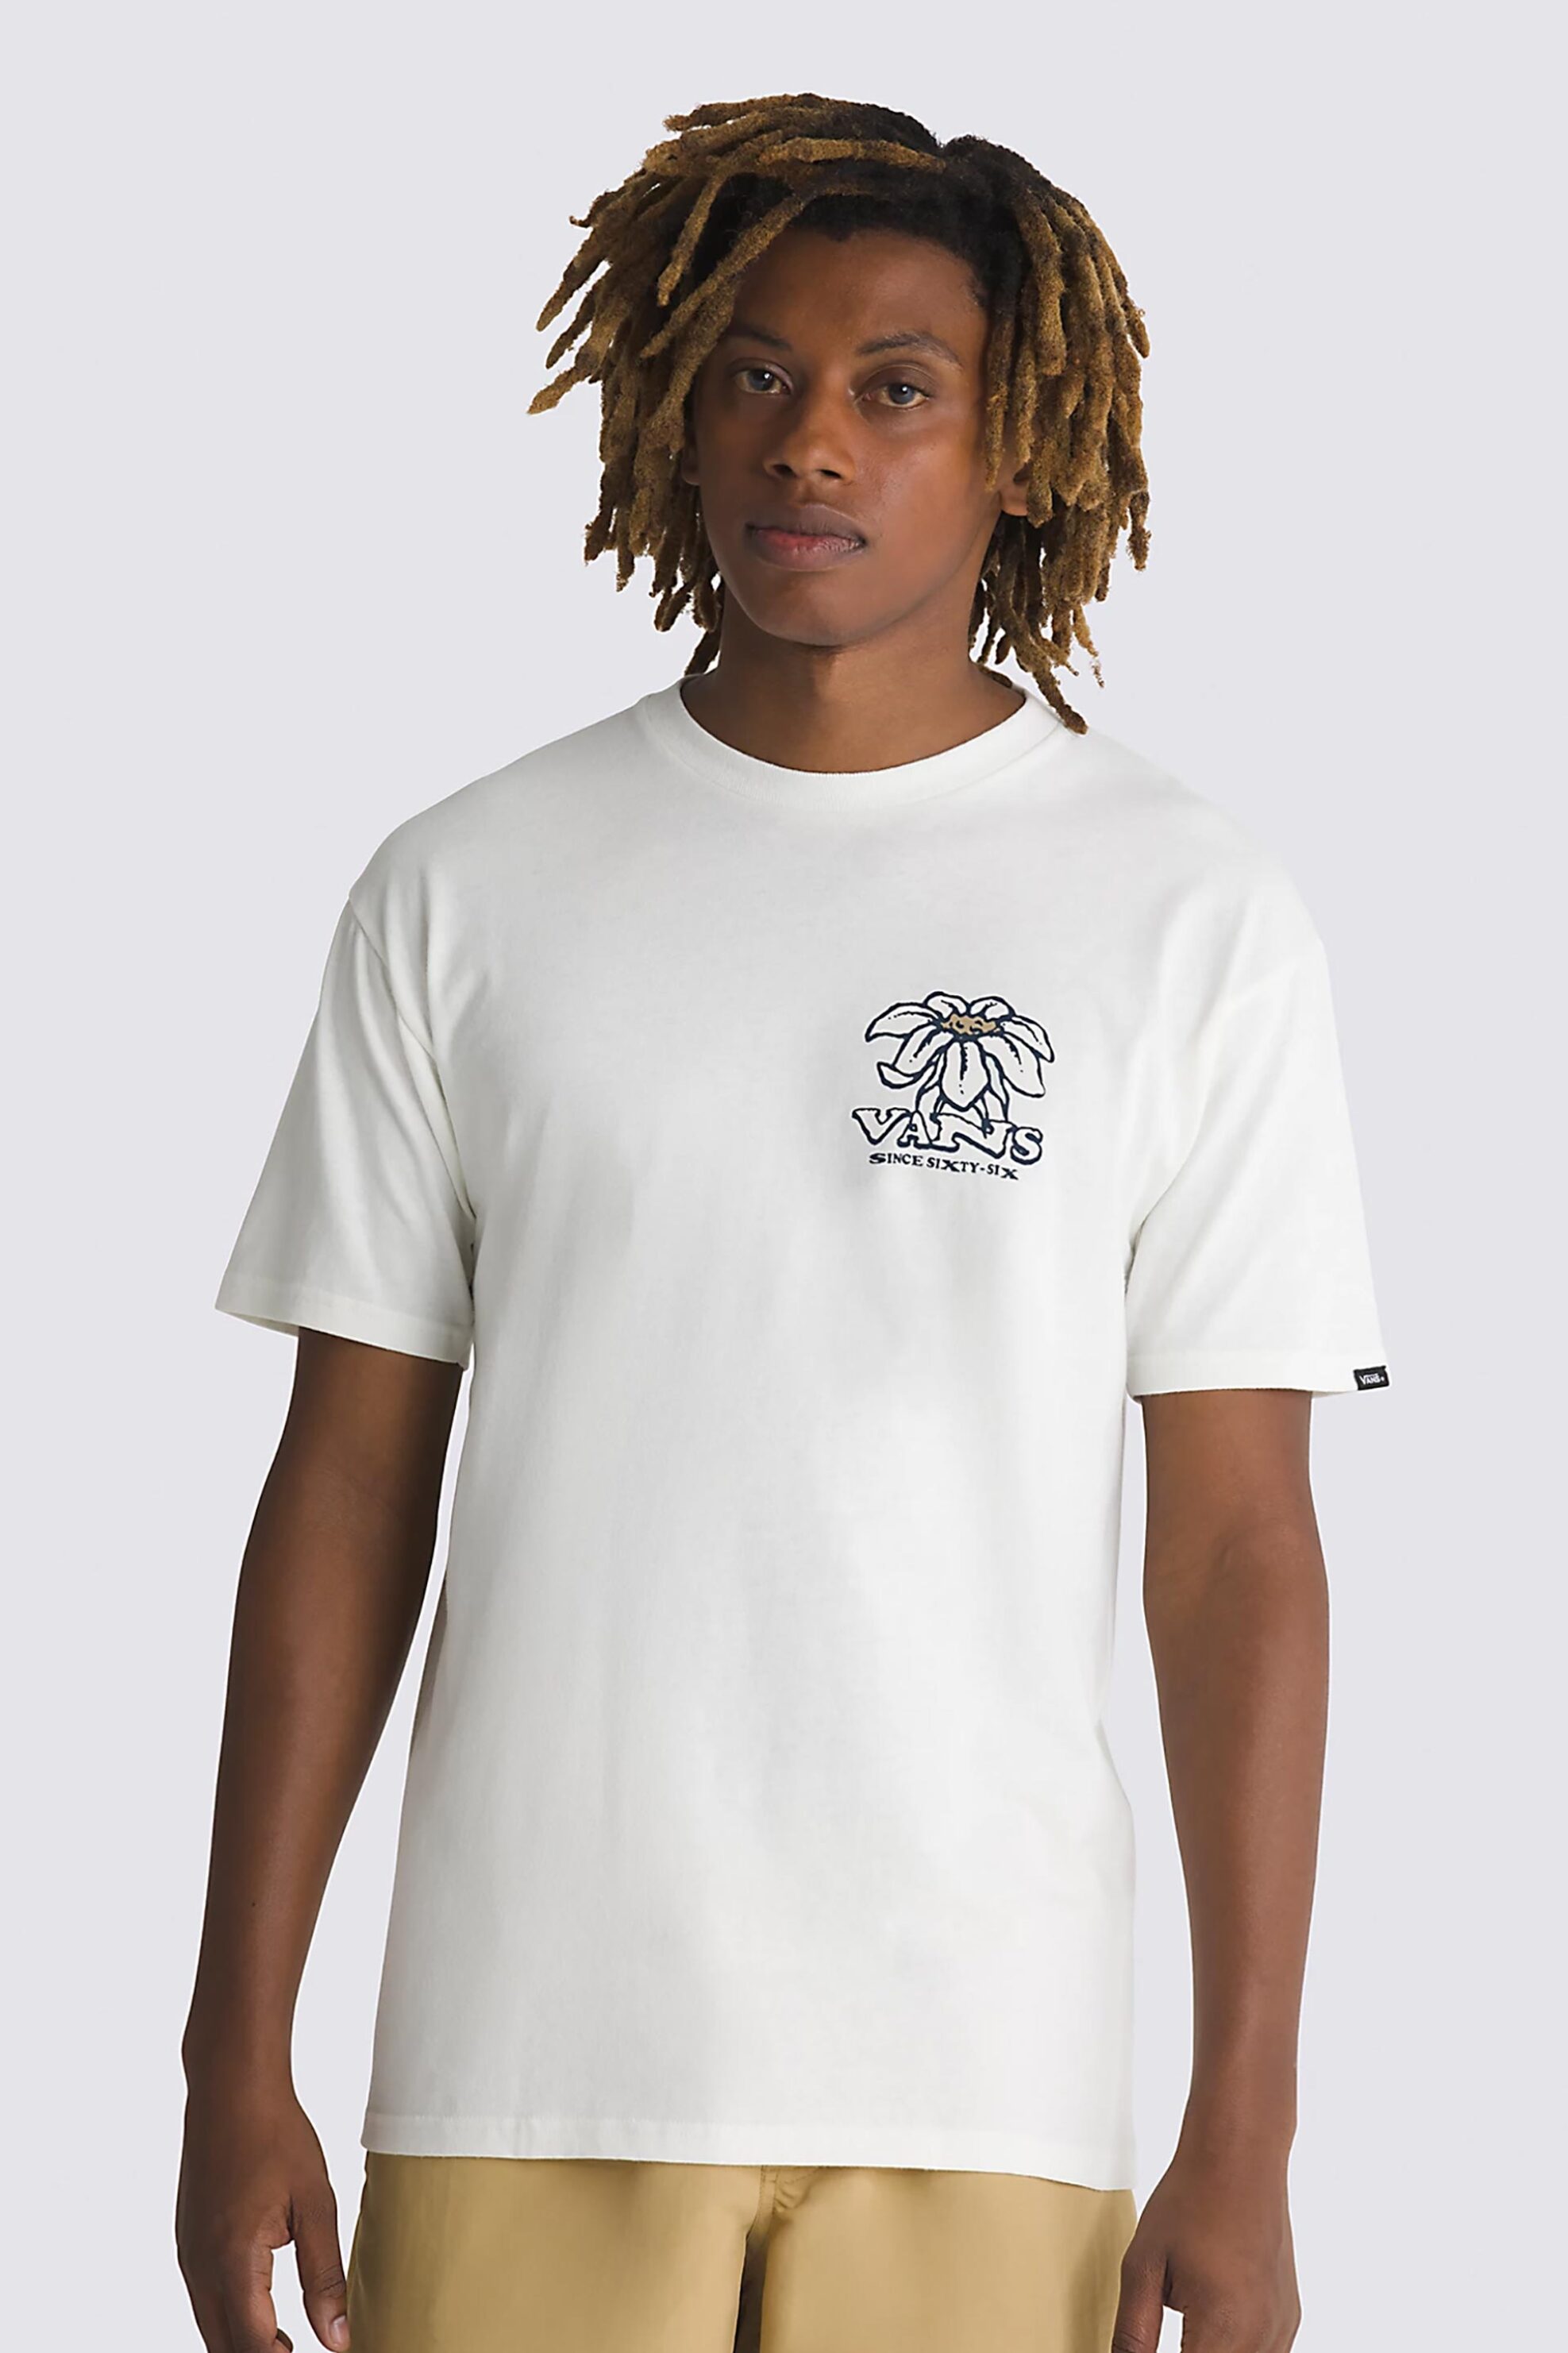 Ανδρική Μόδα > Ανδρικά Ρούχα > Ανδρικές Μπλούζες > Ανδρικά T-Shirts Vans ανδρικό βαμβακερό T-shirt μονόχρωμο με contrast τυπώματα "Whats Inside" - VN000G59FS81 Λευκό